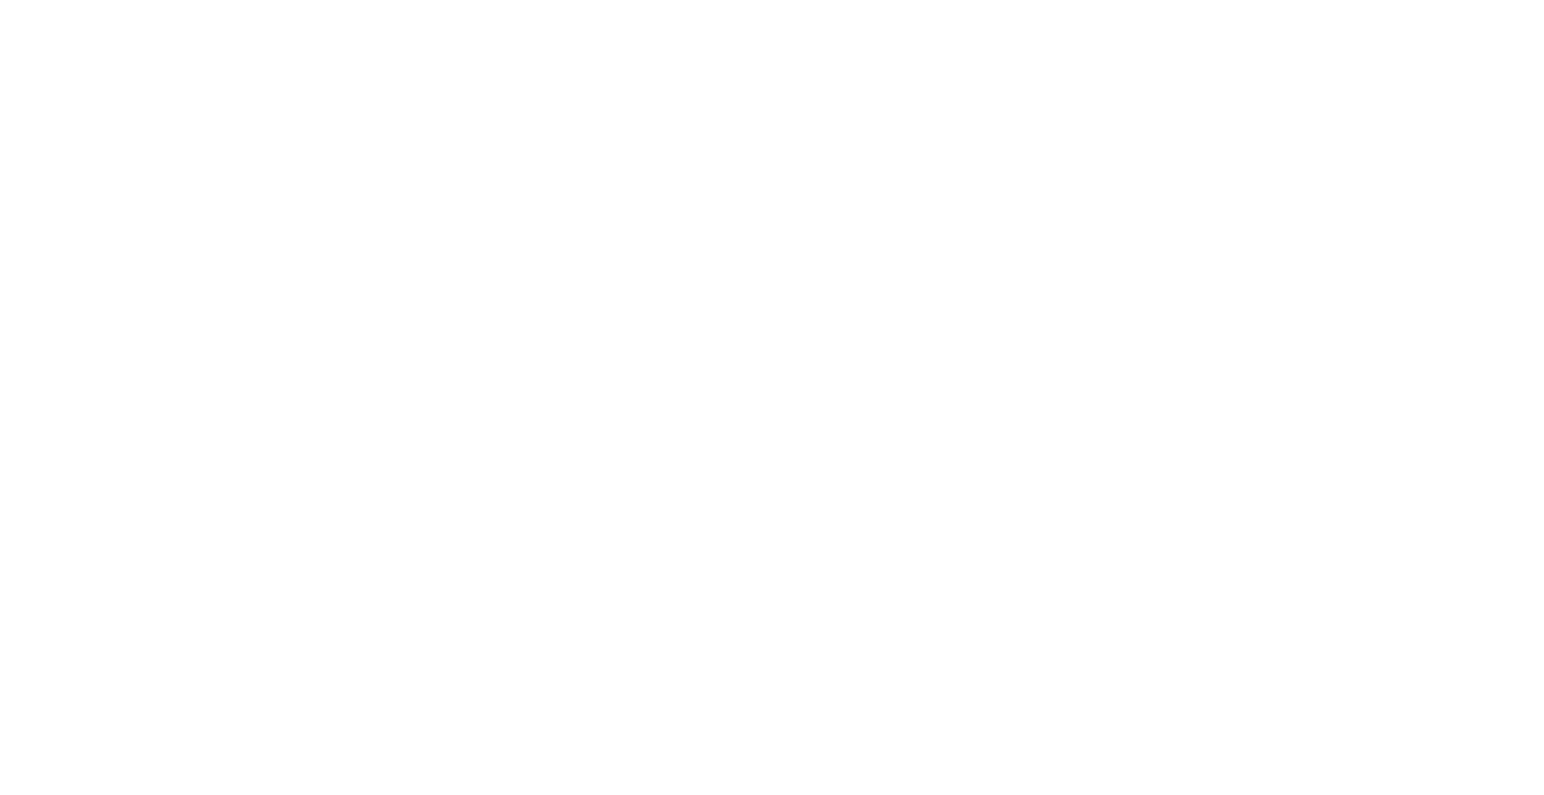 GPA logo large for dark backgrounds (transparent PNG)